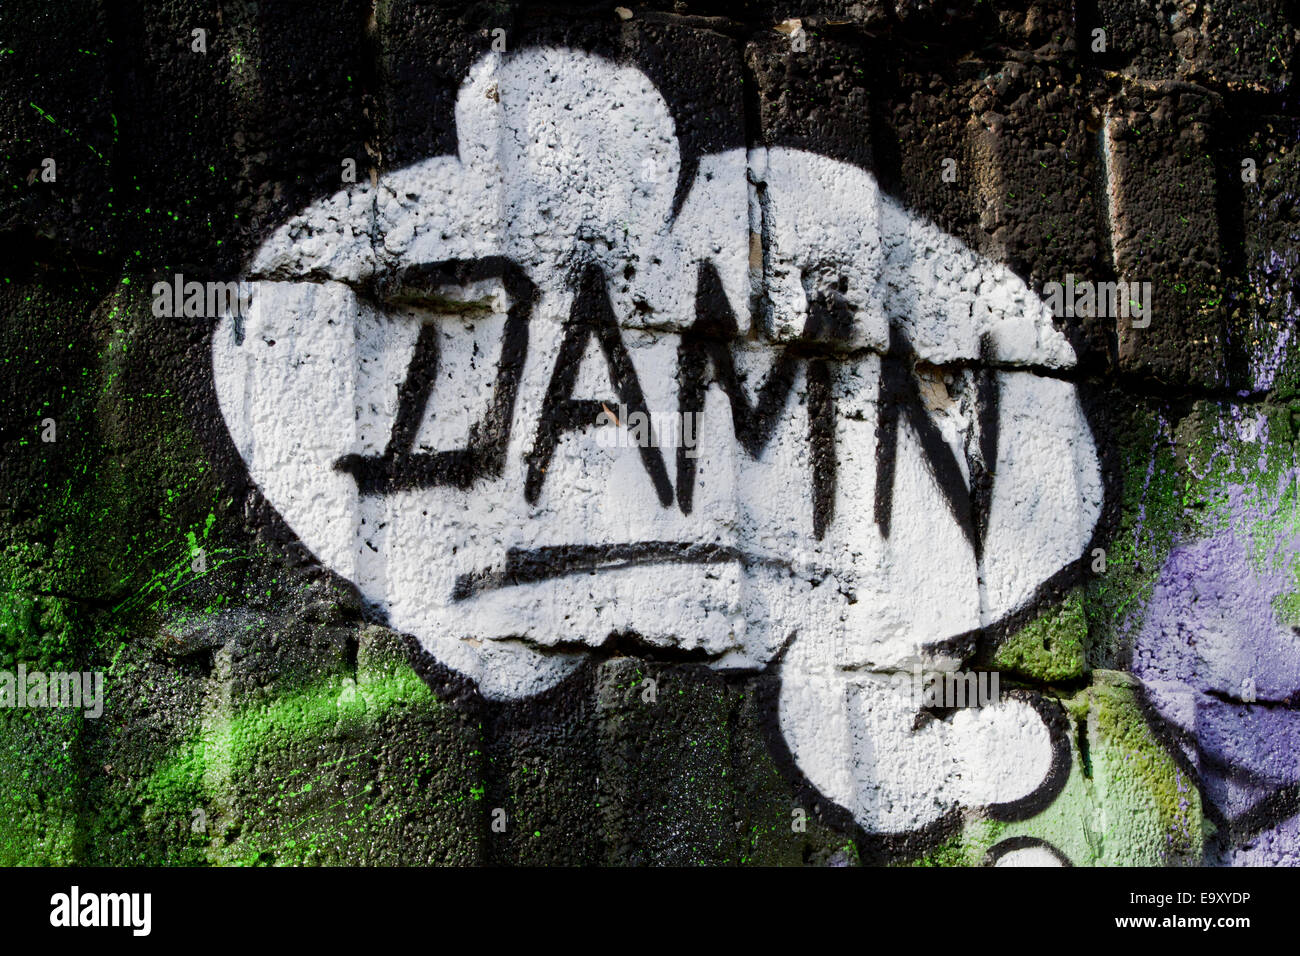 Putain de mur de Berlin graffiti sombre bulle Banque D'Images